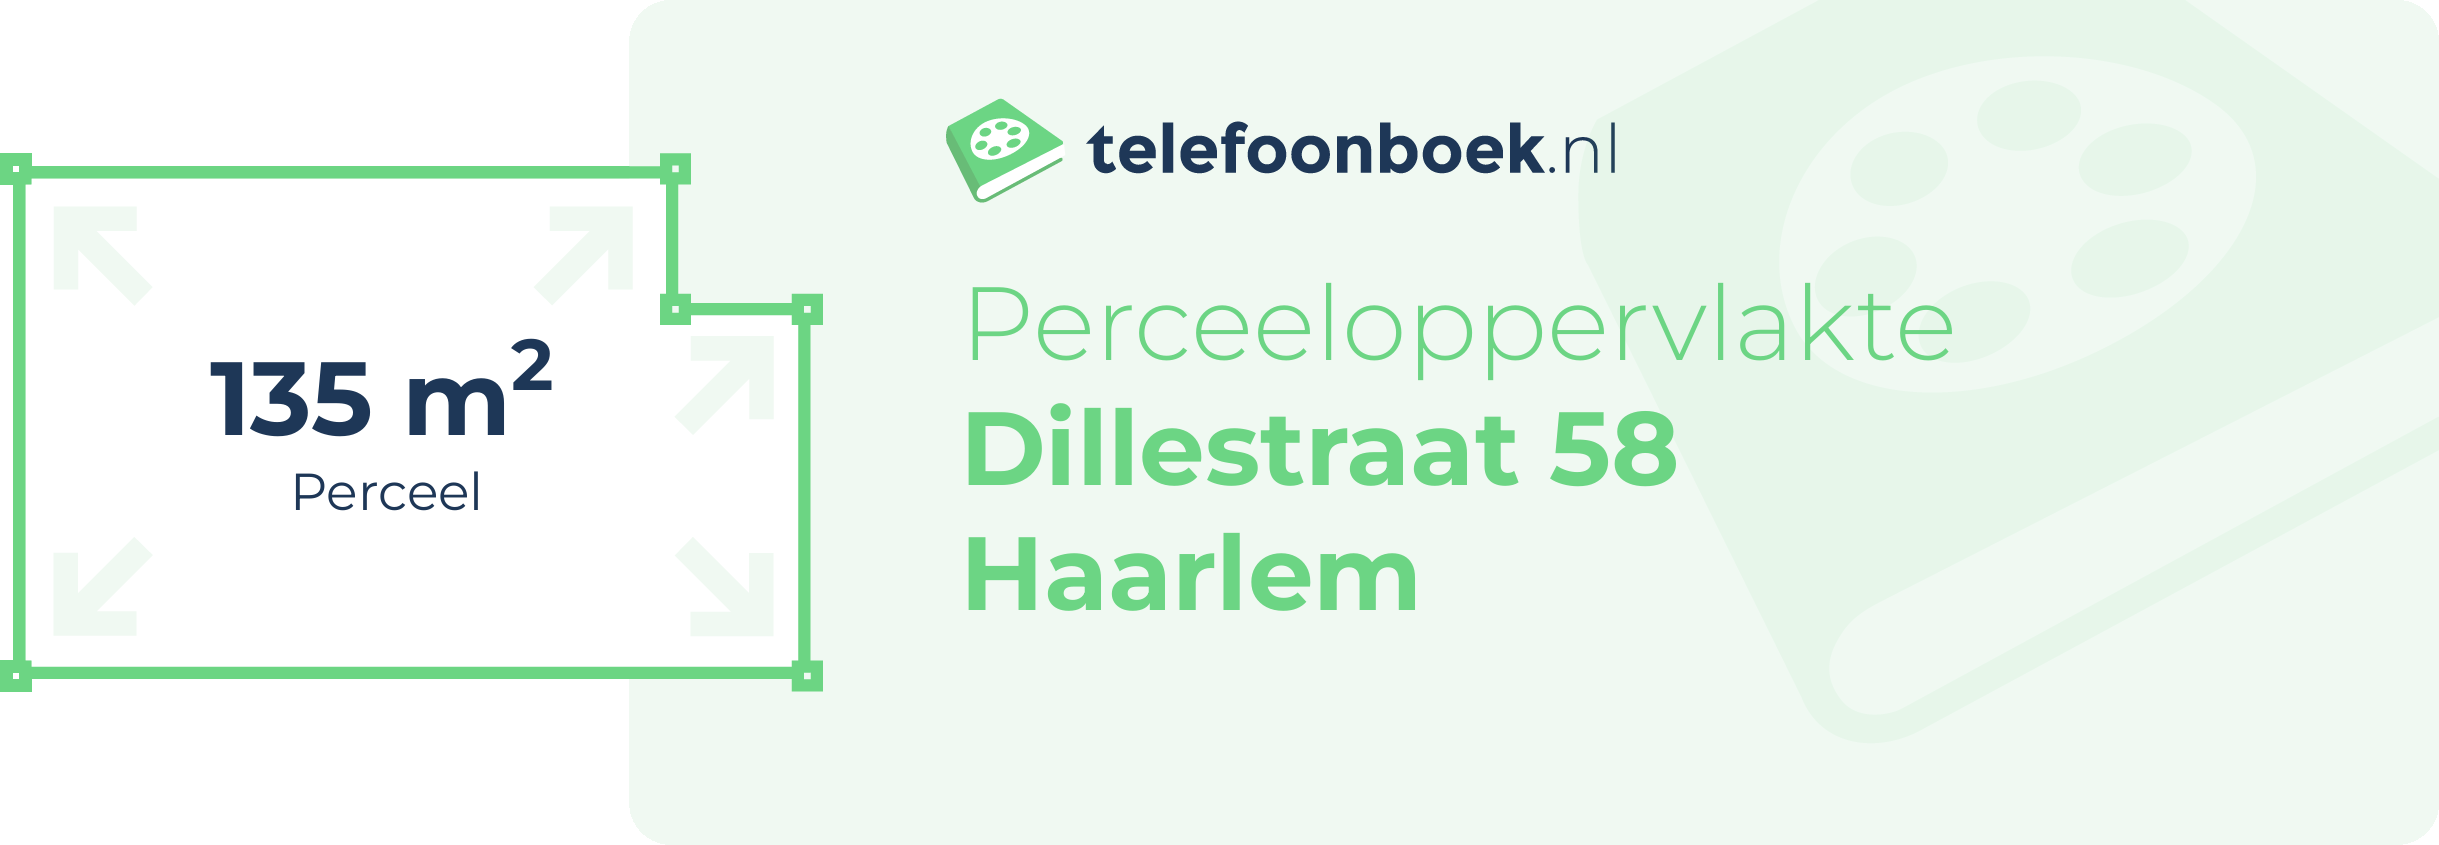 Perceeloppervlakte Dillestraat 58 Haarlem